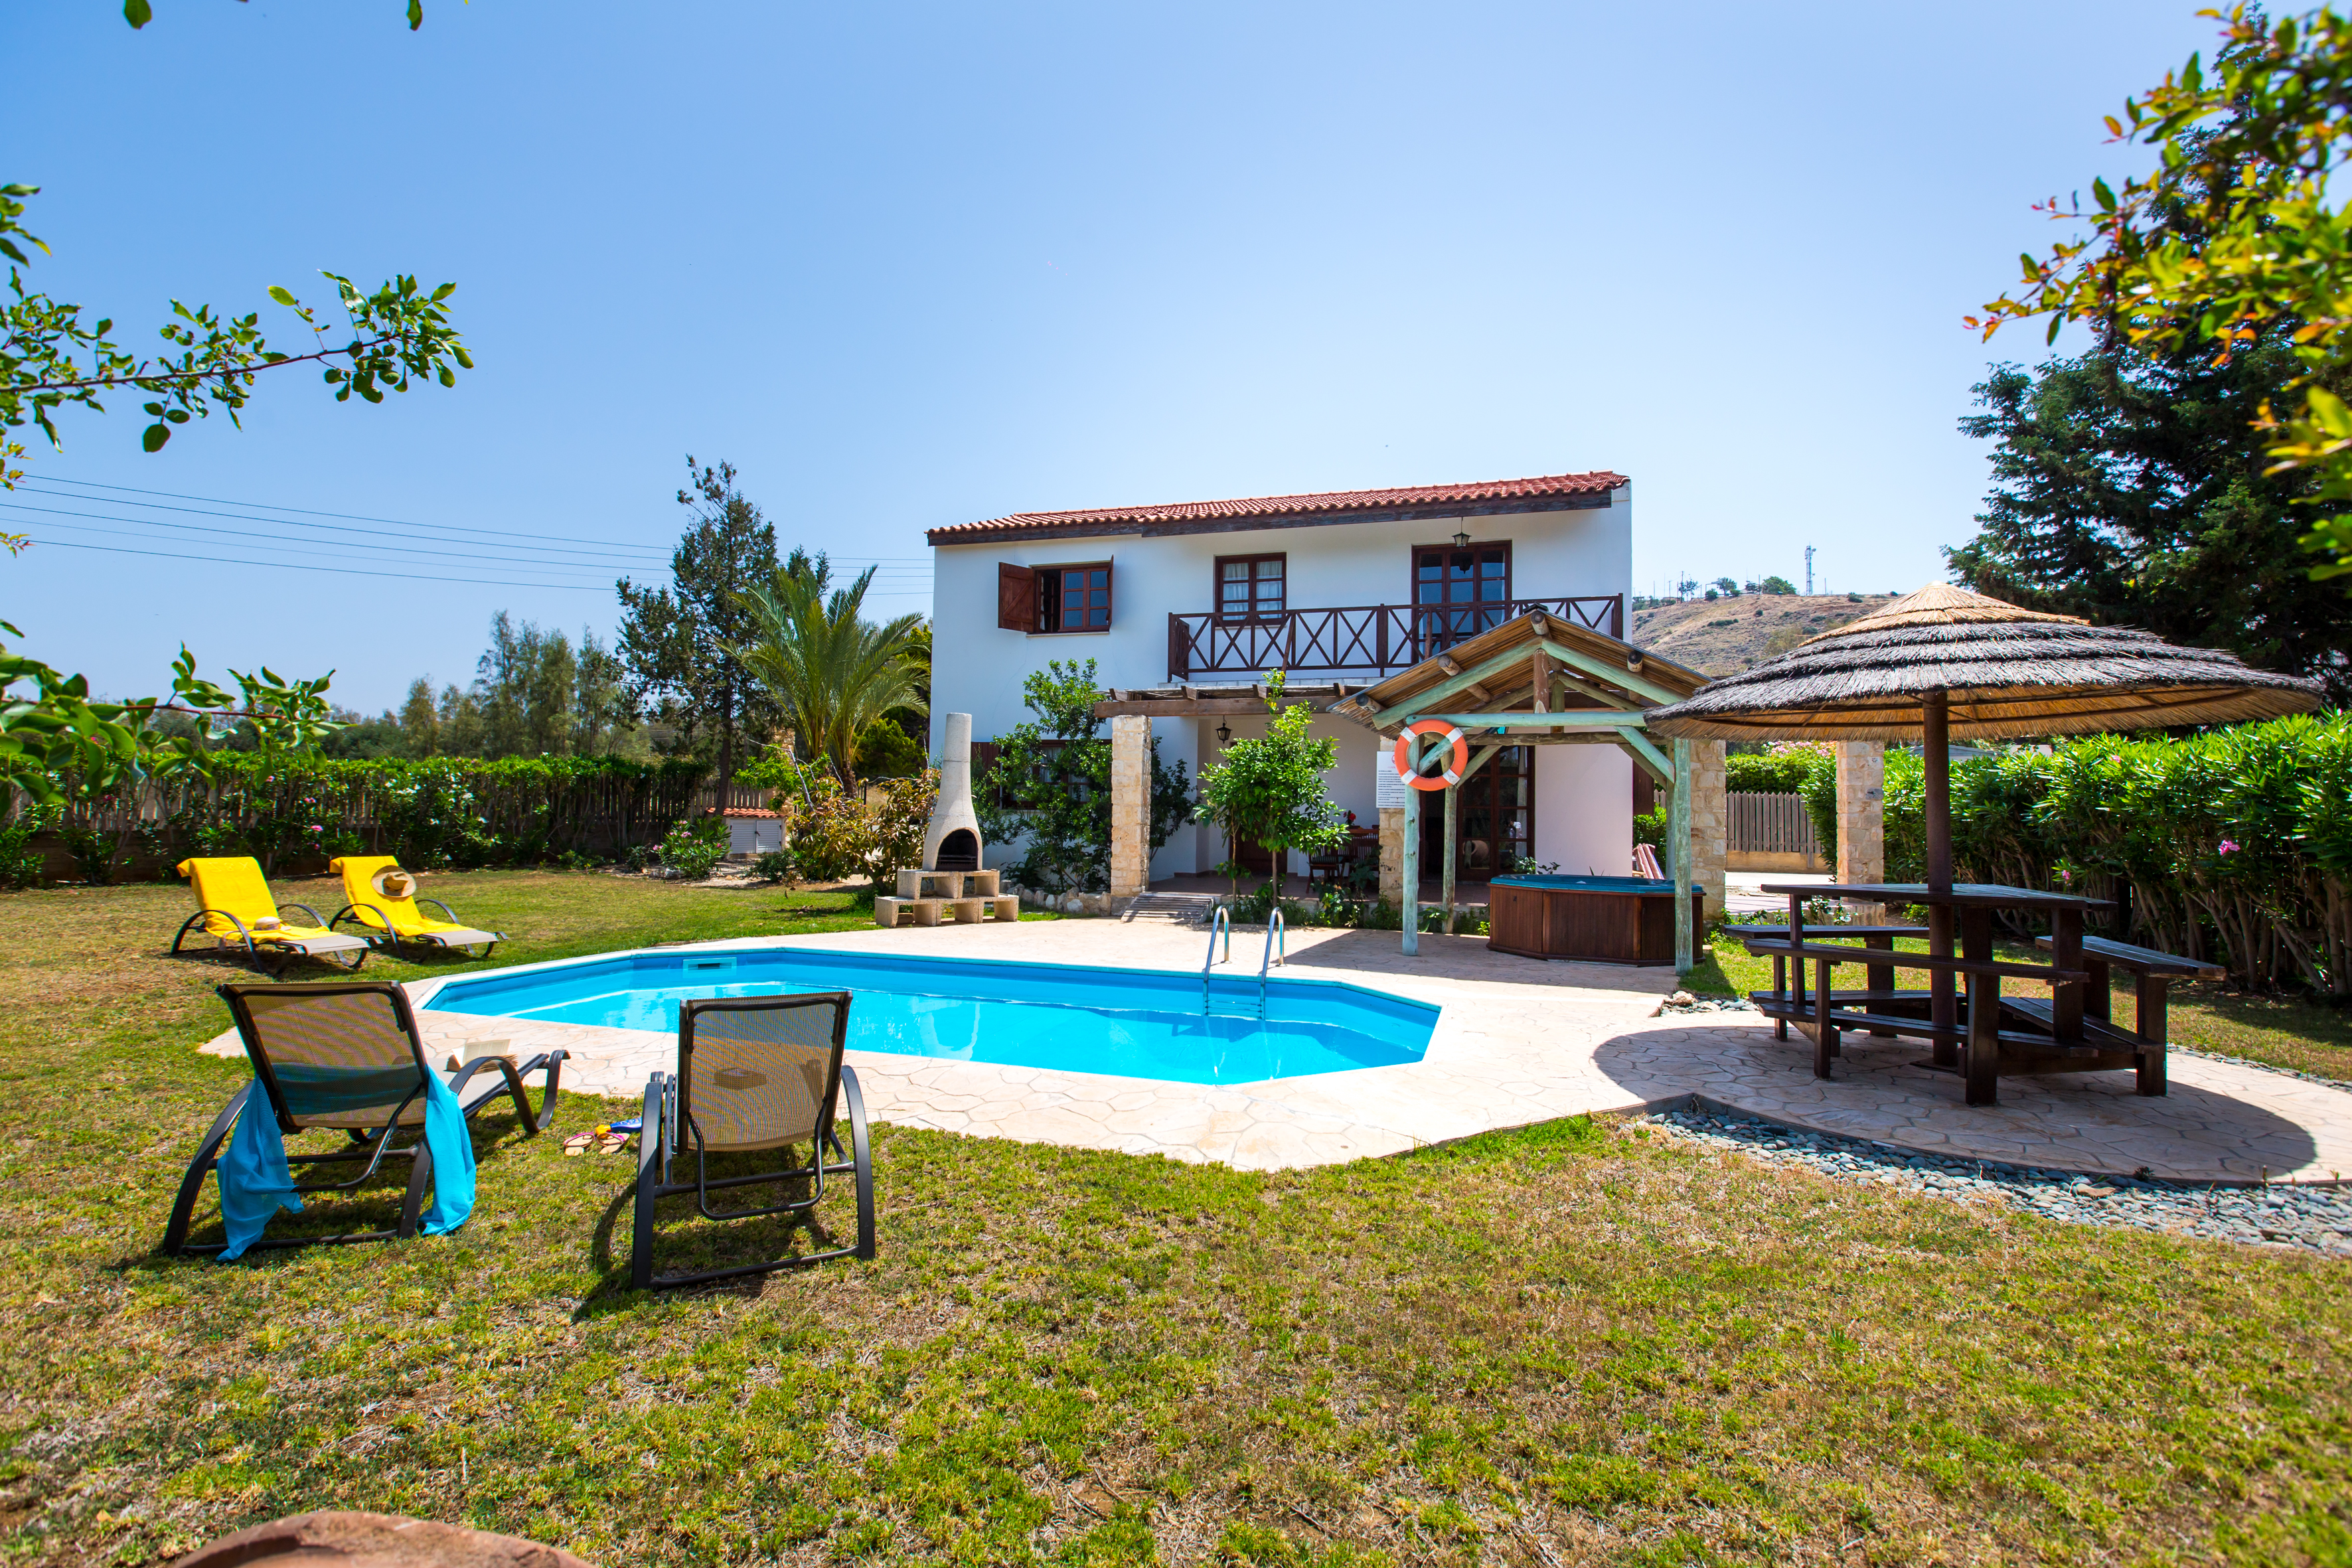 villa rentals in cyprus